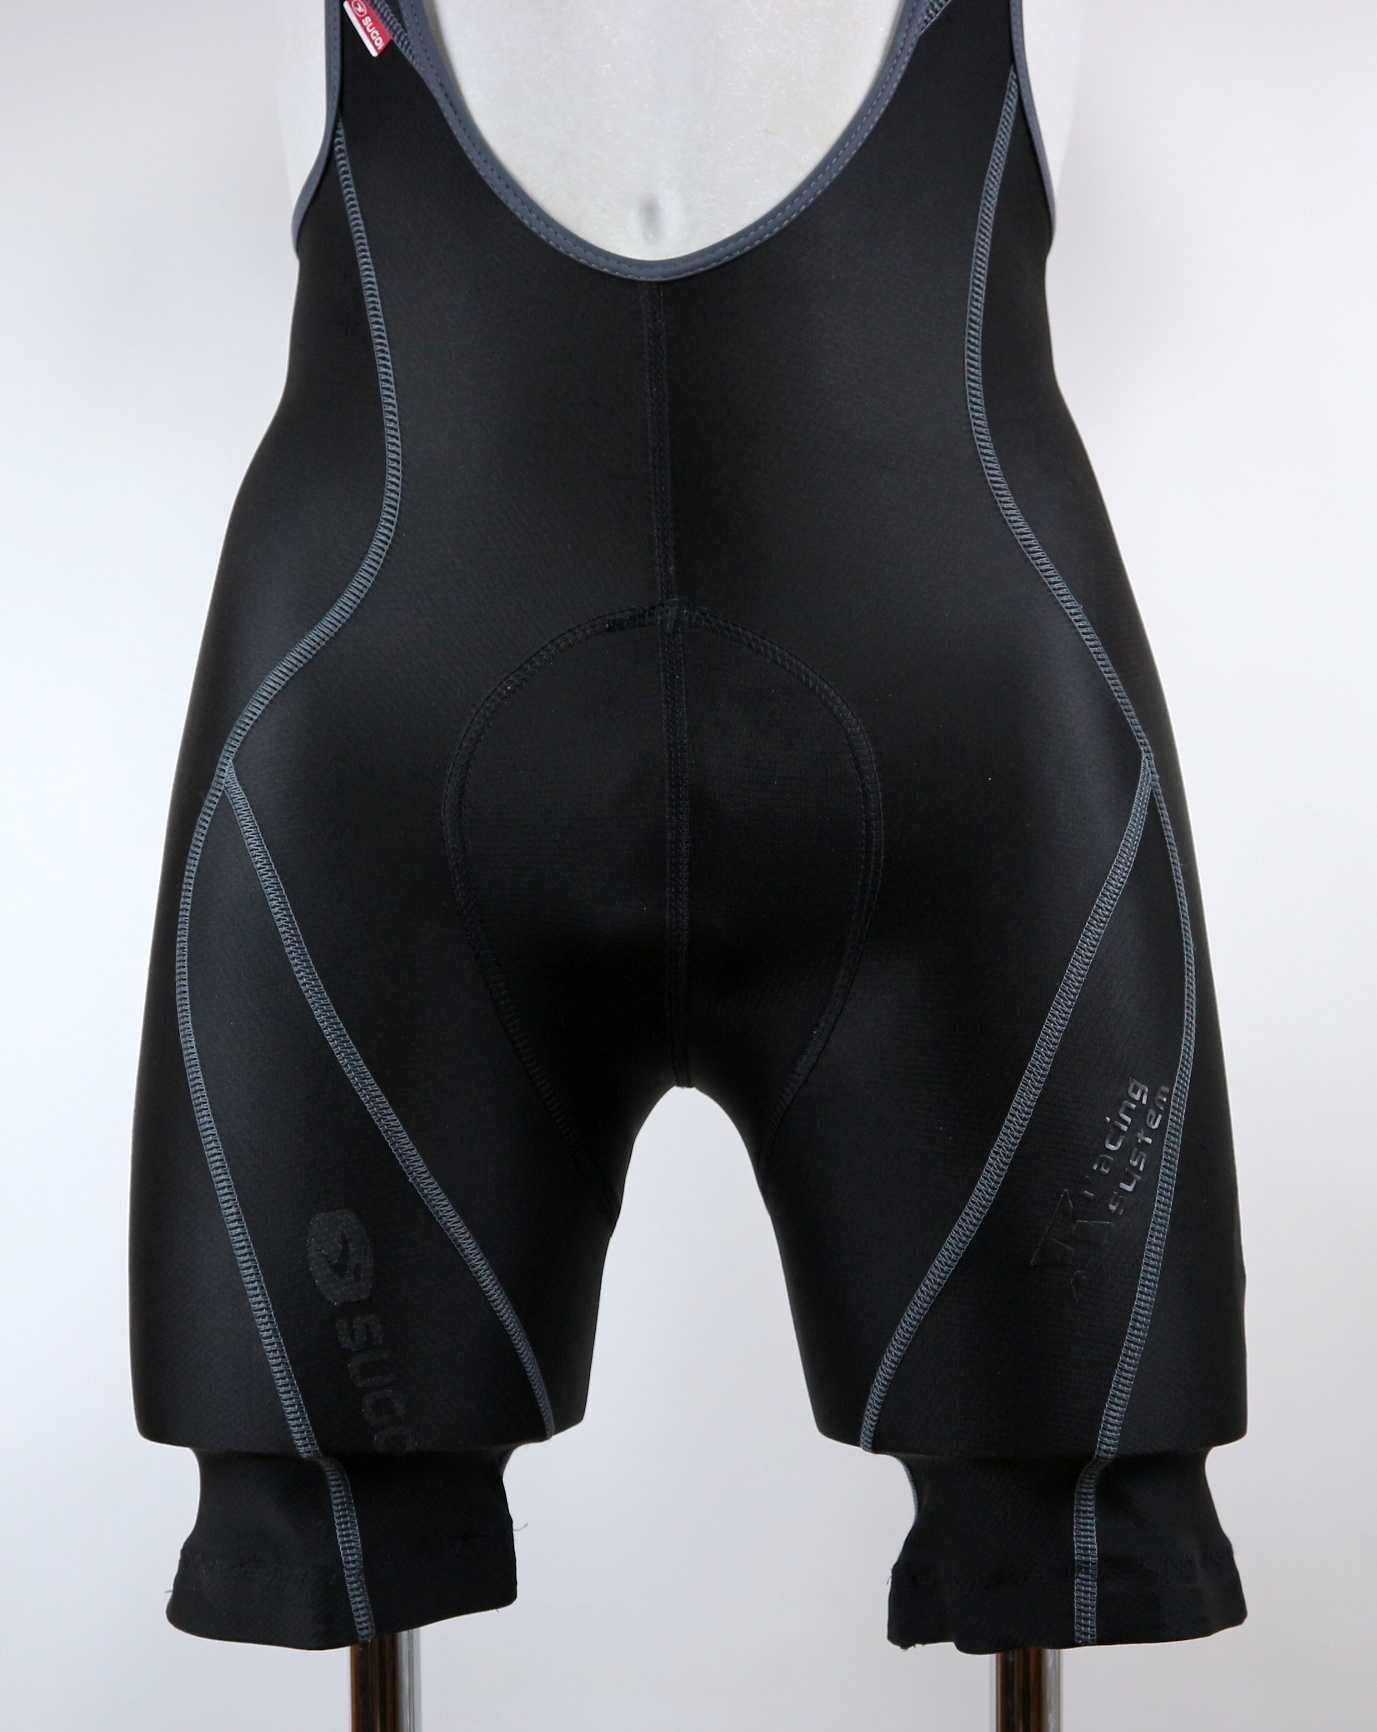 Sugoi RS Bib shorts spodenki rowerowe na szelkach szorty kolarskie S